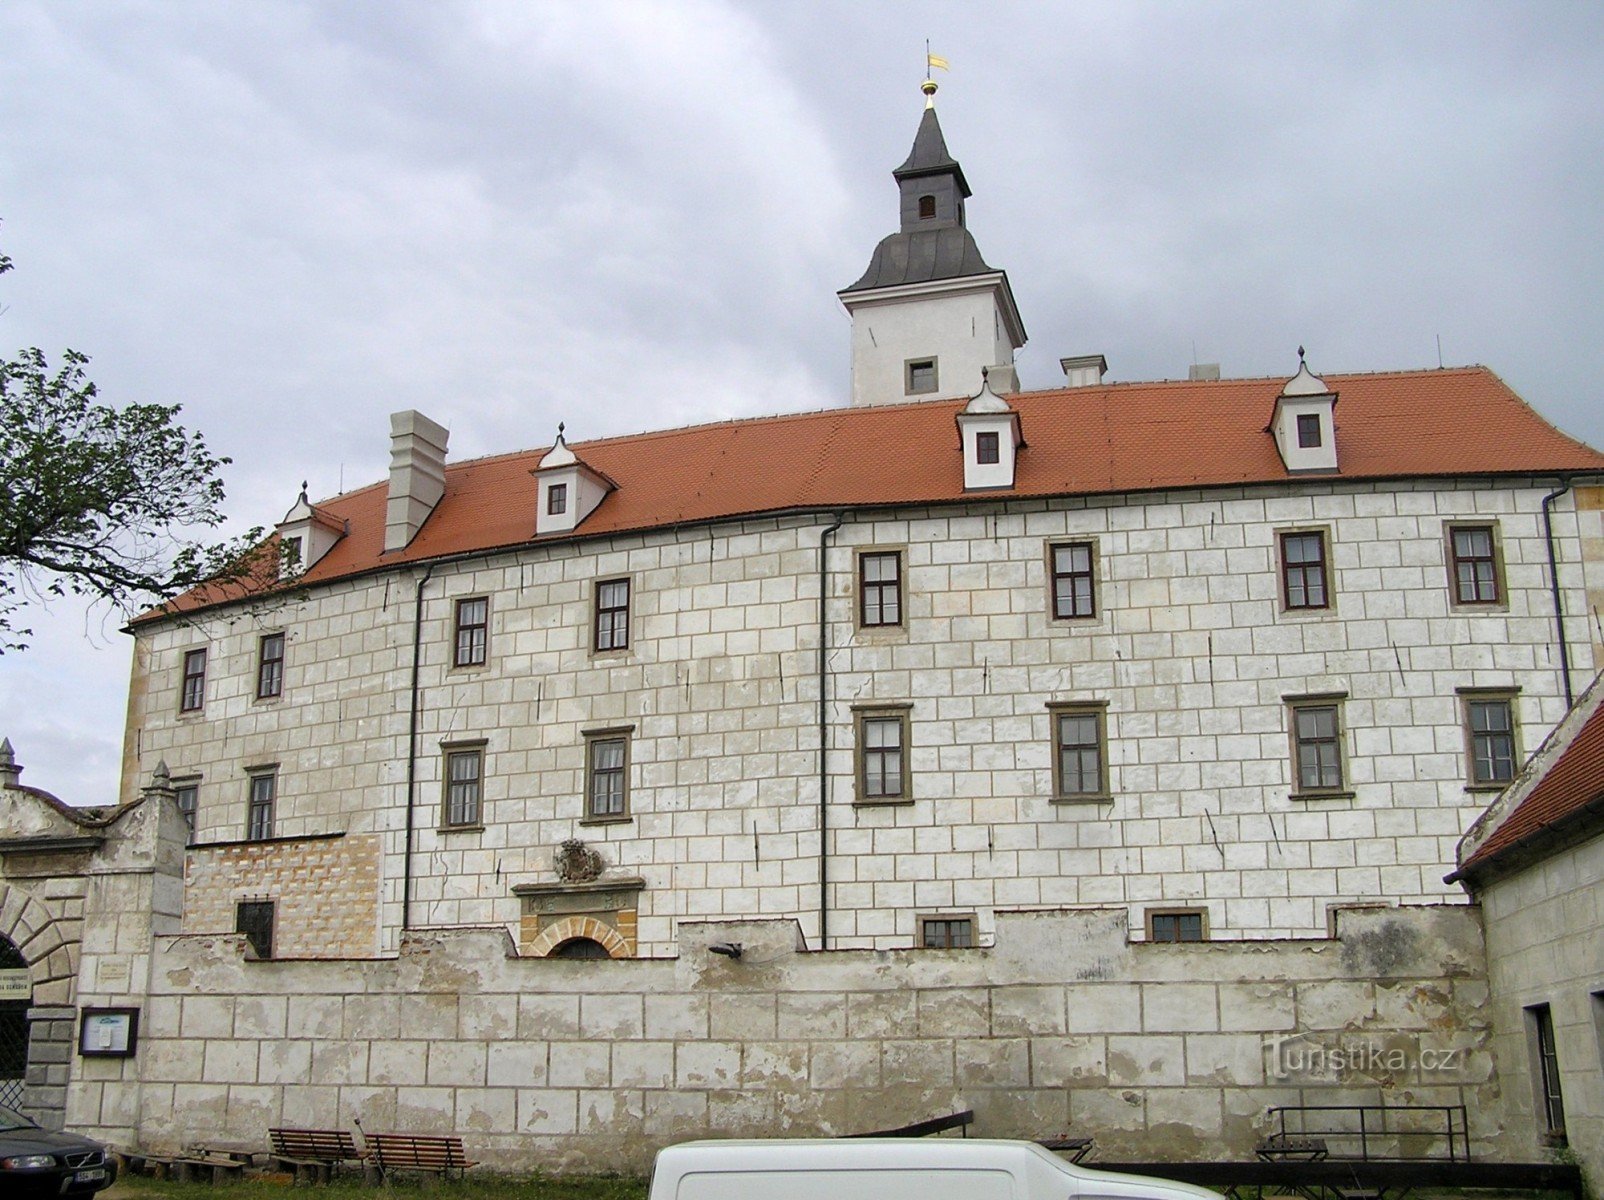 Jevišoice - Old Castle (August 2006)